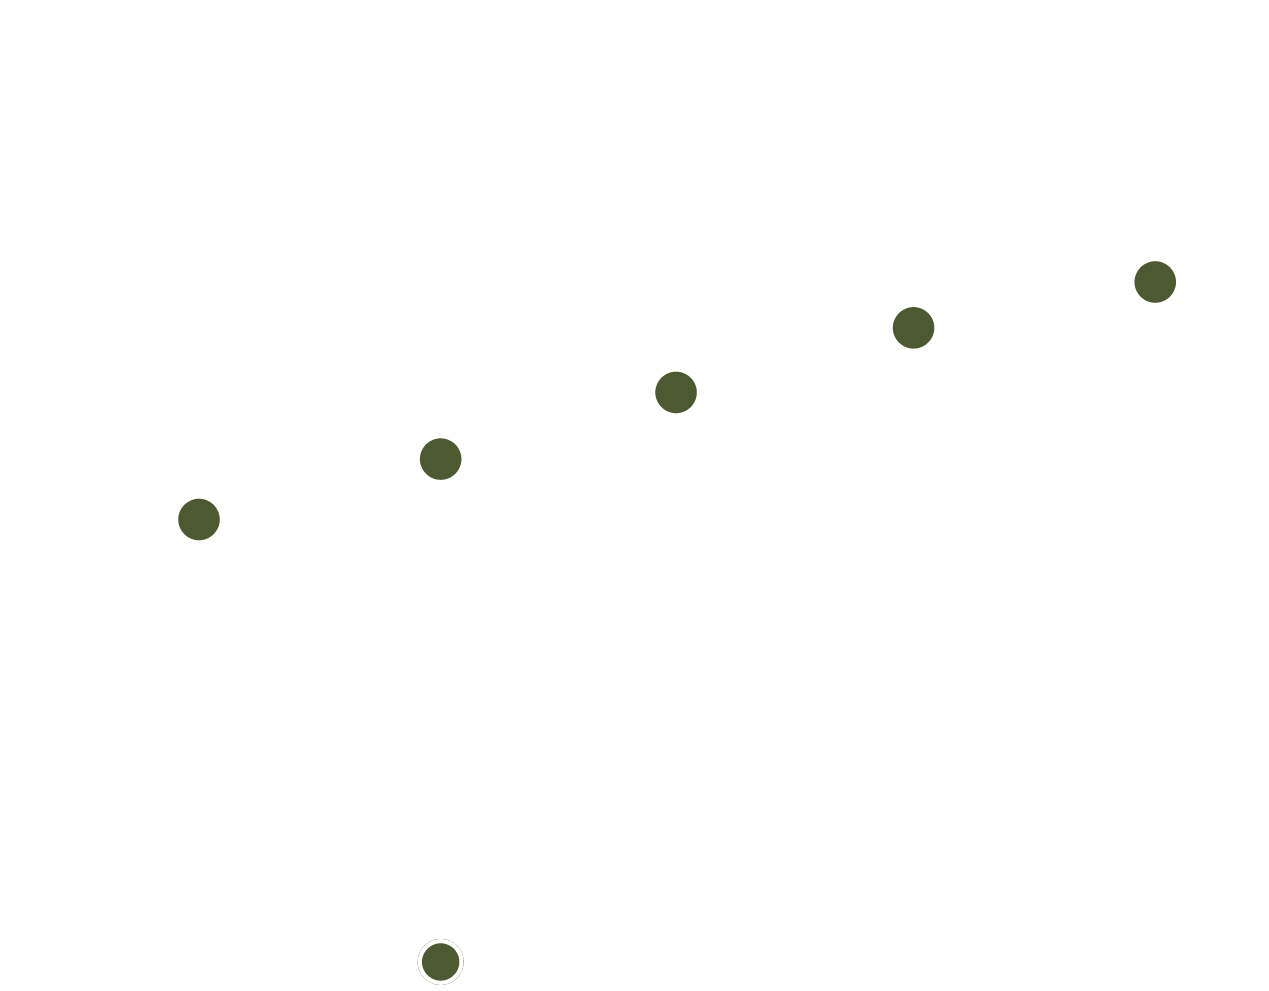 Este gráfico muestra la rentabilidad de las compañías con calificación ESG dividida en quintiles. El eje vertical muestra la Rentabilidad bruta, medida por la calificación z, que oscila entre -0,2 y 0,2. El eje horizontal muestra Q1 a Q5 en valores discretos. Las barras verticales encima de Q1- Q5 representan el rango entre el 5% y el 95% de los valores observados. Cada línea tiene un punto verde que representa la media y un punto blanco que representa el valor actual